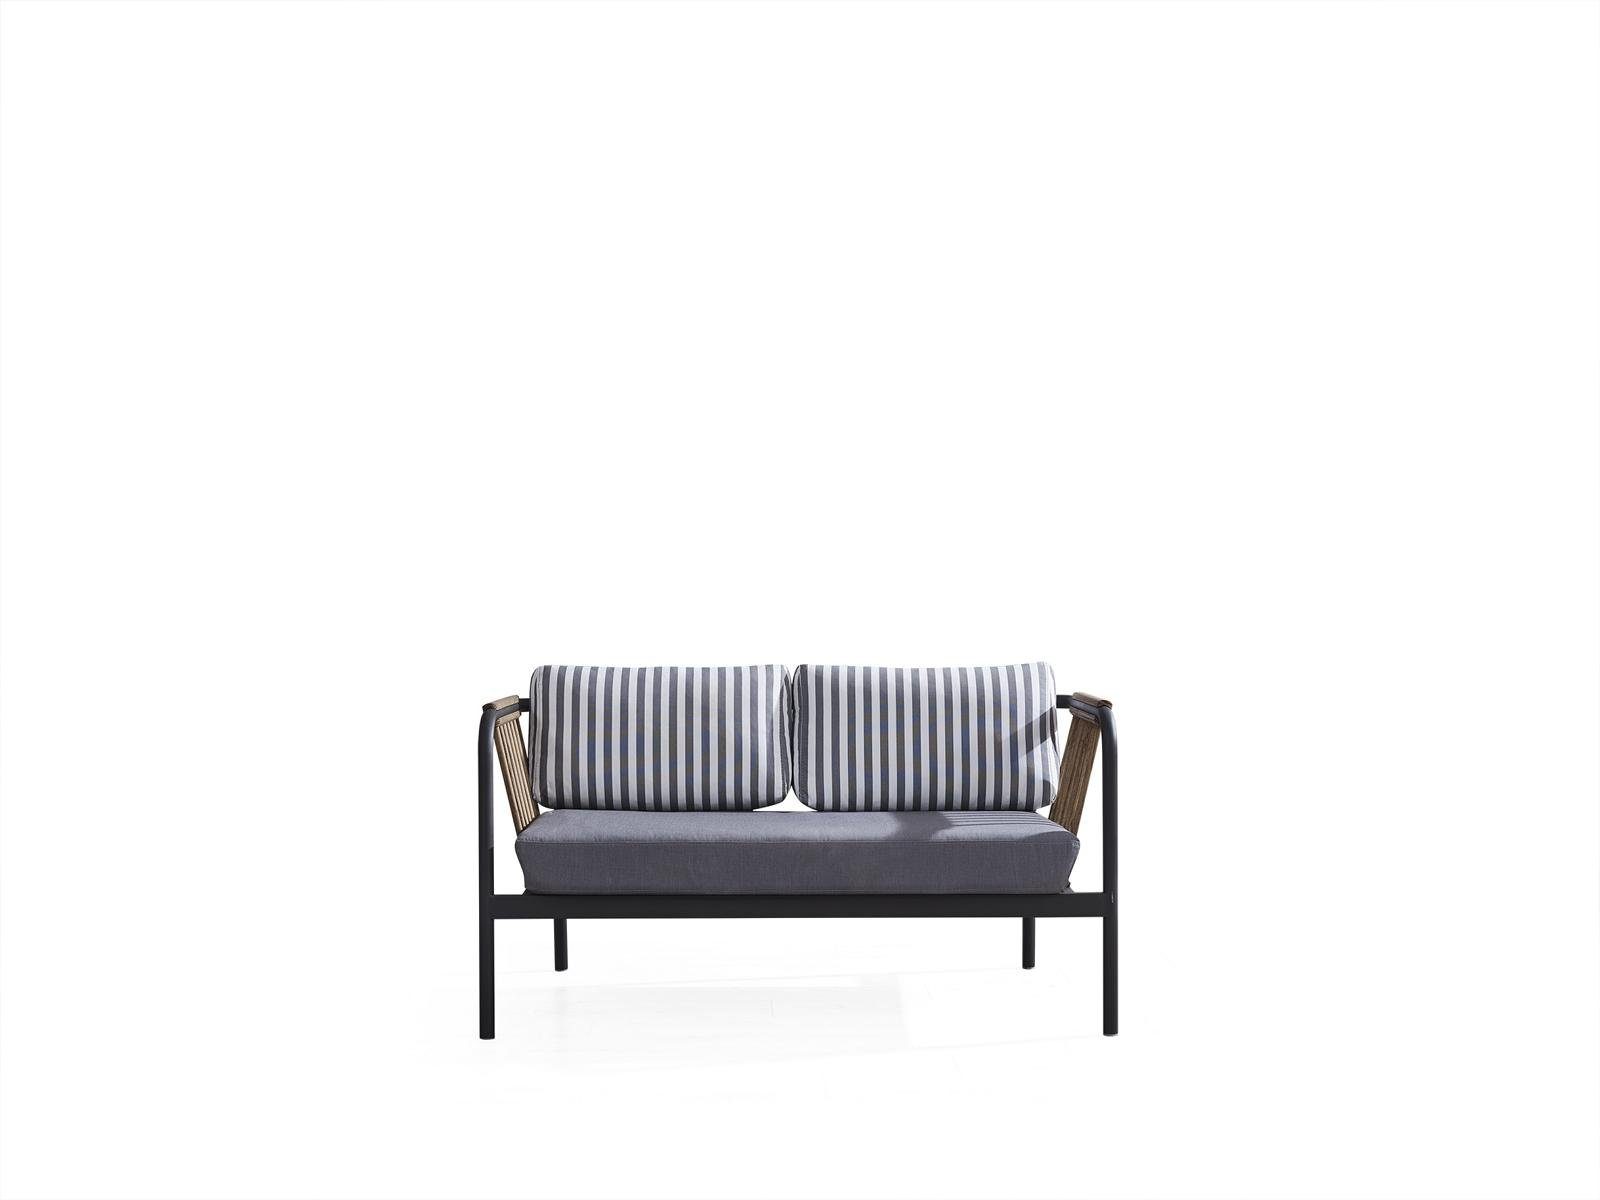 JVmoebel 2-Sitzer Modern Sofa 2 Sitzer Luxus Sofas Möbel Design Grau, Made in Europe